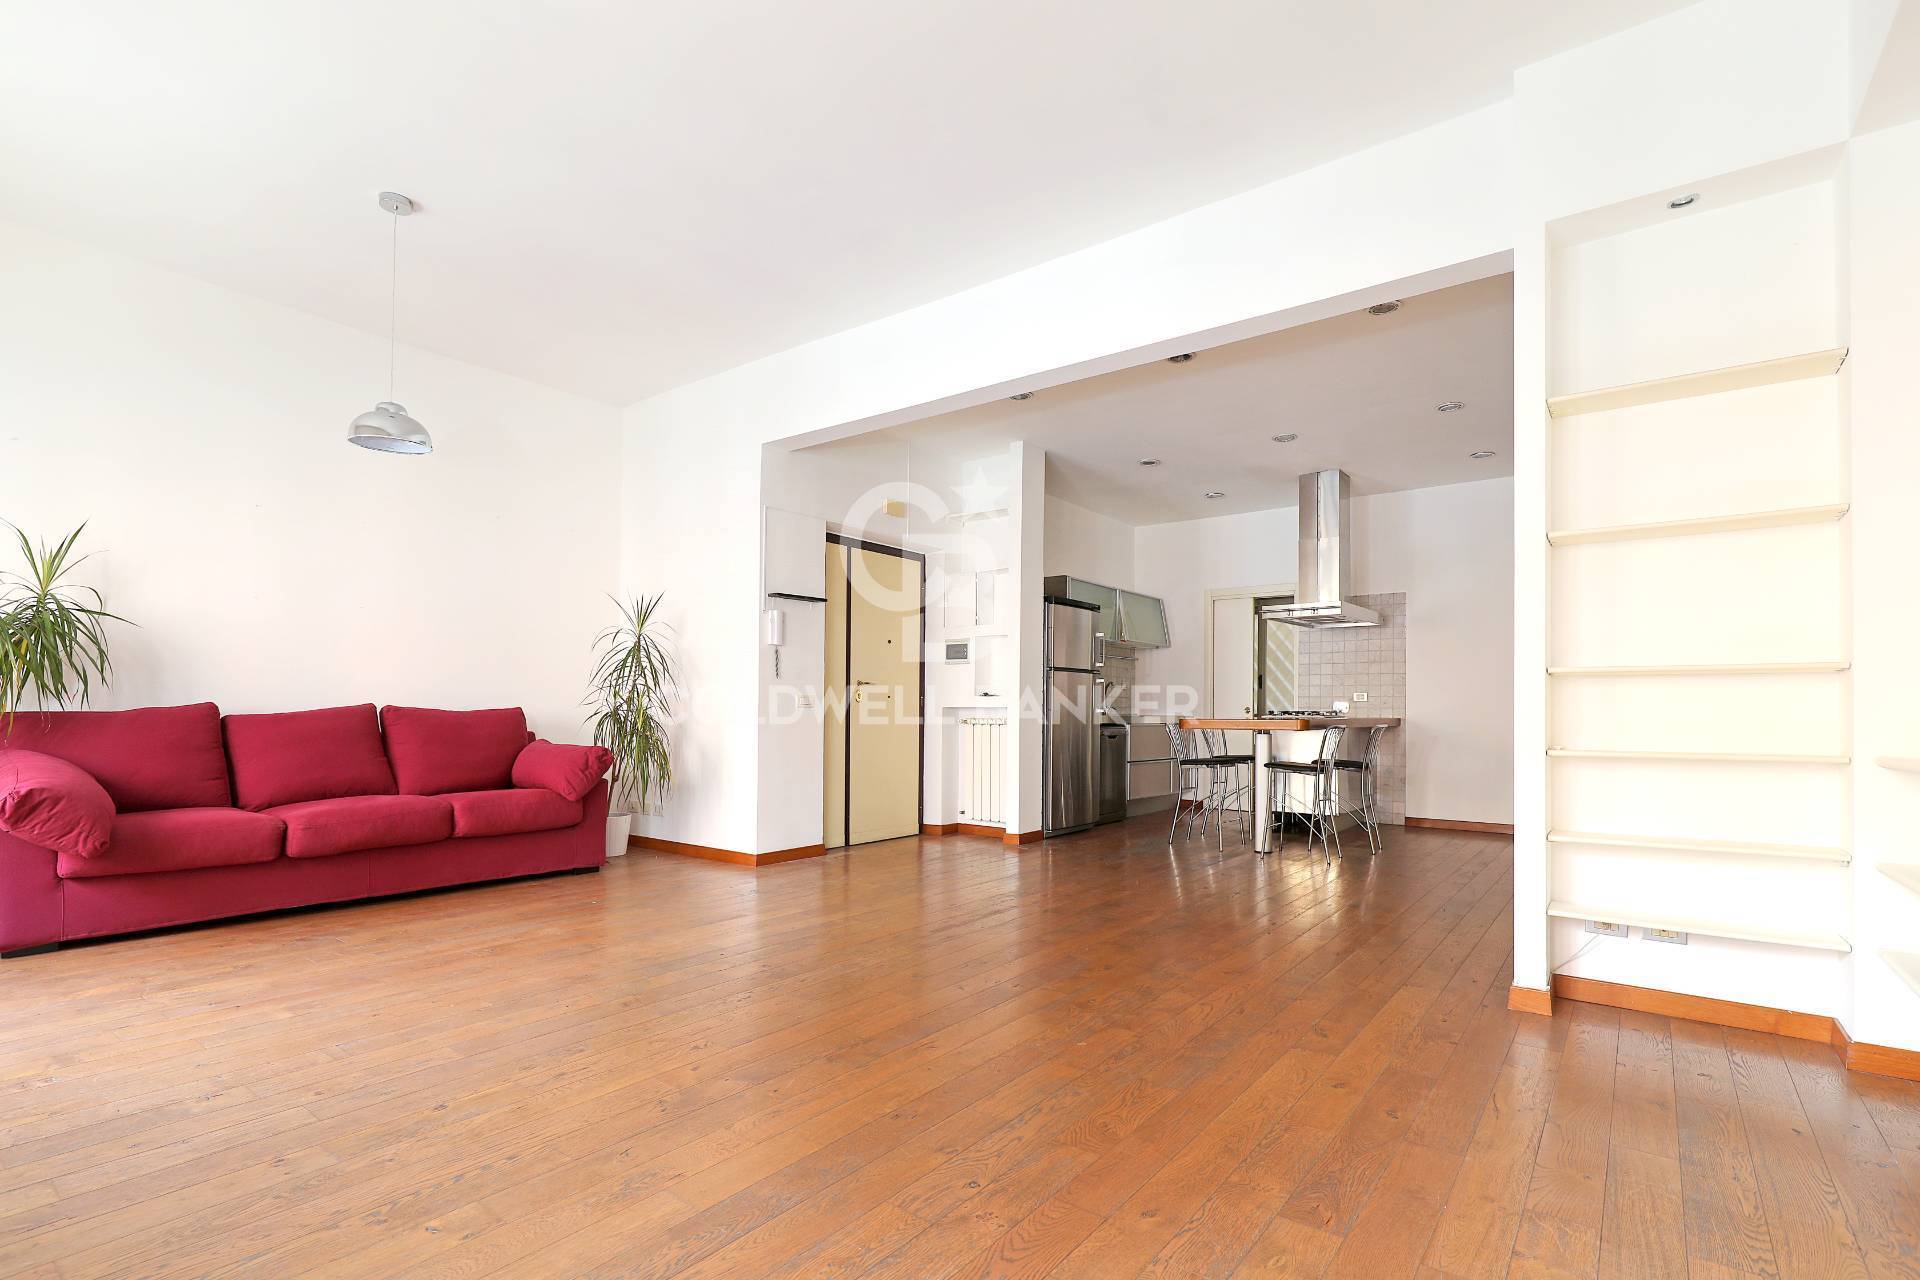 Appartamento in vendita a Roma, 4 locali, zona Zona: 24 . Gianicolense - Colli Portuensi - Monteverde, prezzo € 435.000 | CambioCasa.it